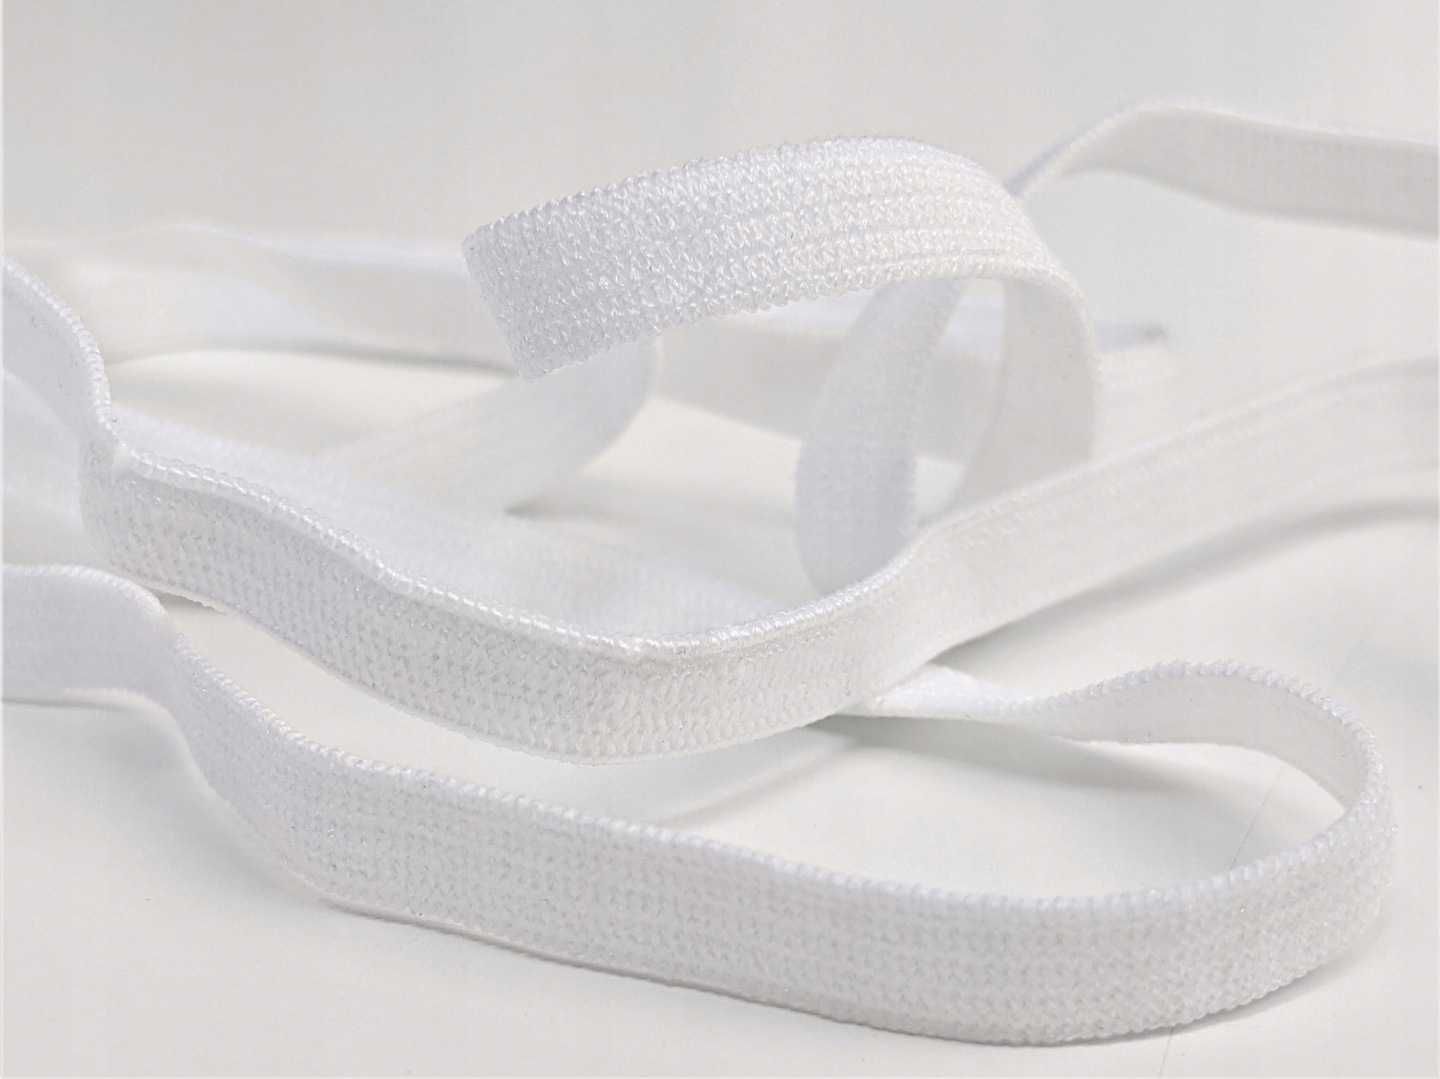 Guma biała dziana odzieżowa krawiecka elastyczna 5mm 10mb